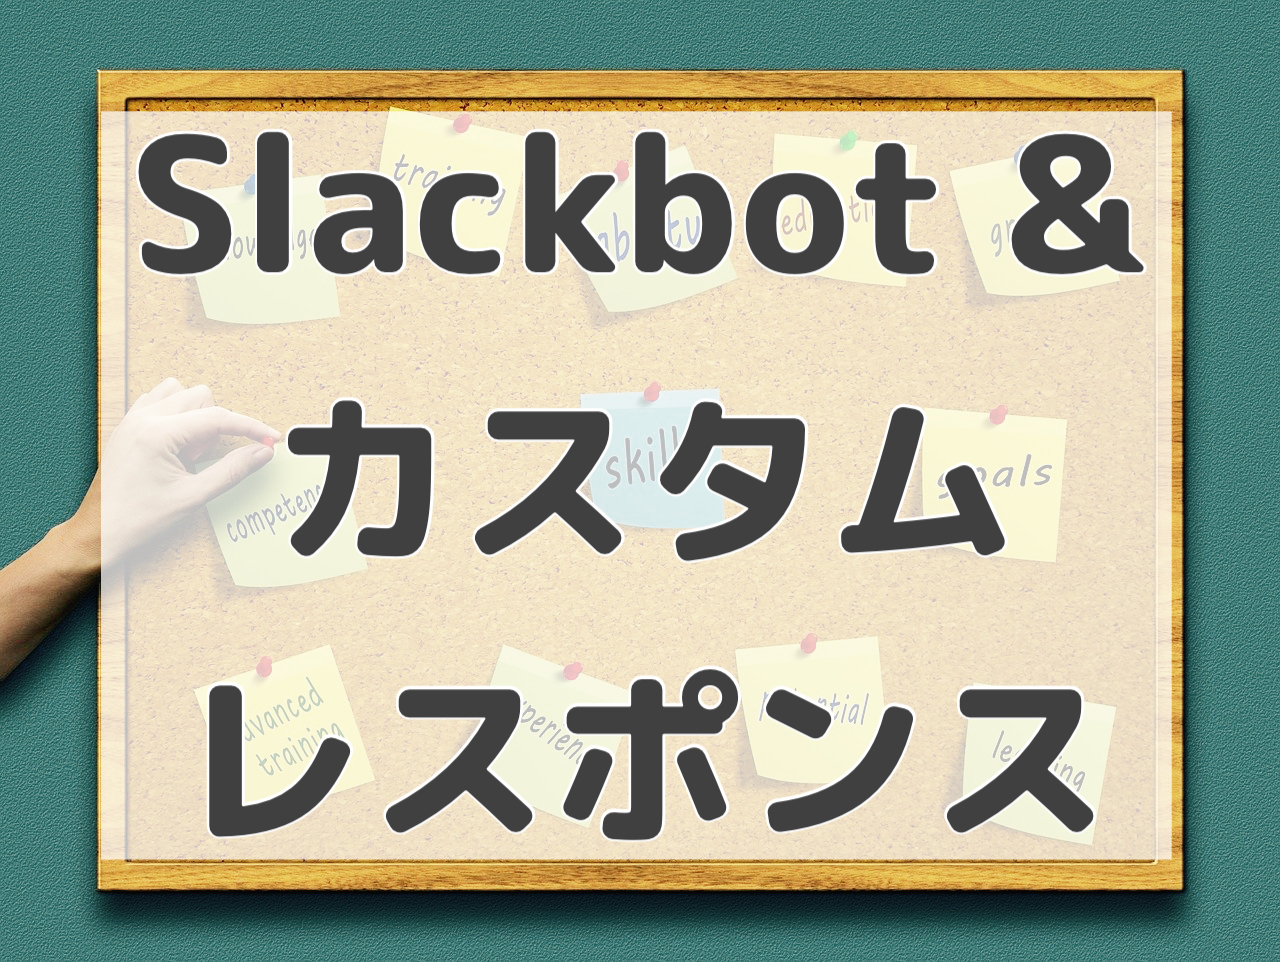 専門知識なしok 今すぐできるaiみたいなslackbot超簡単設定 石川貴彦のブログ